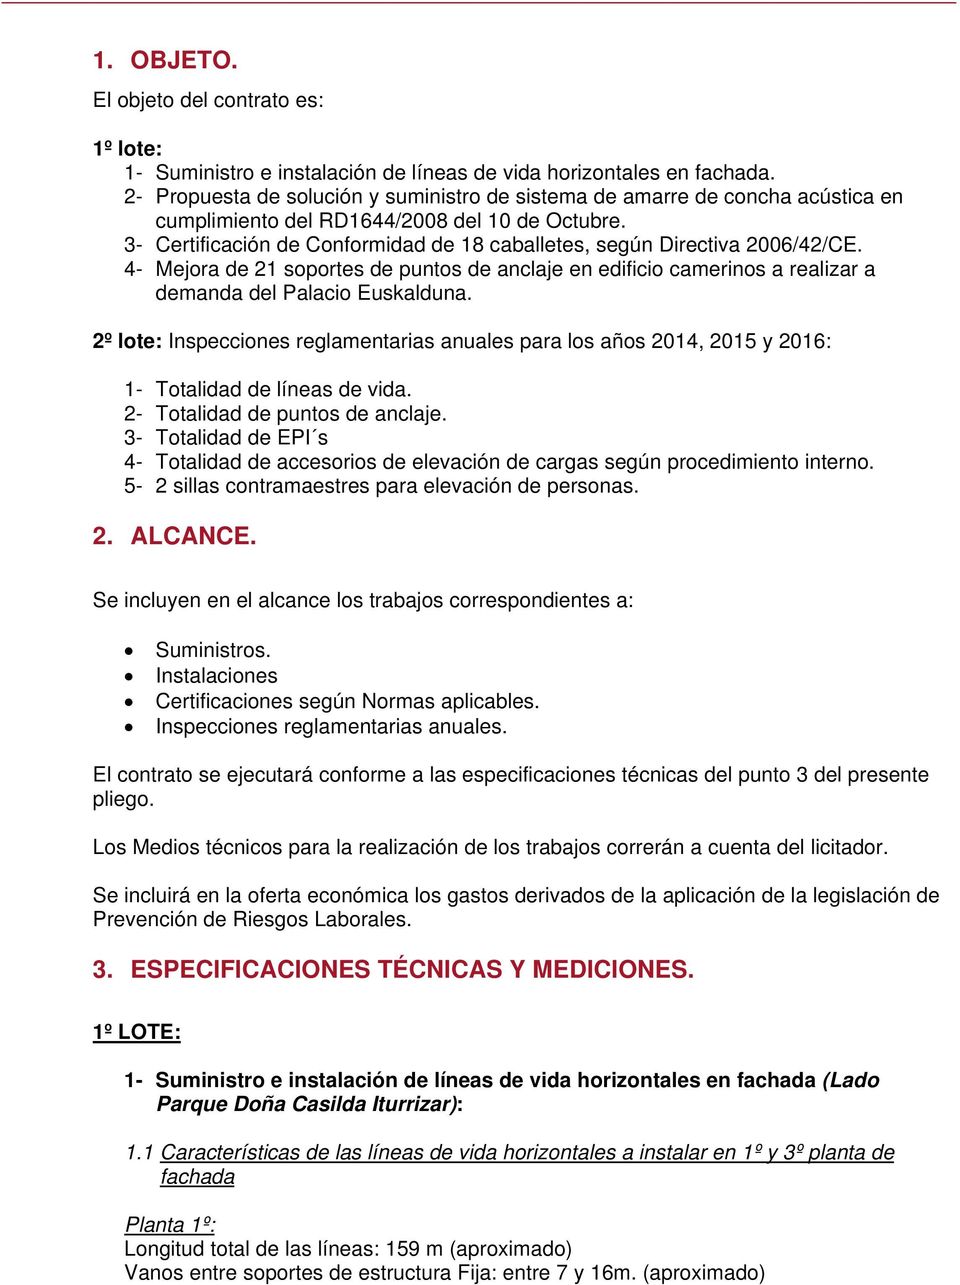 3- Certificación de Conformidad de 18 caballetes, según Directiva 2006/42/CE. 4- Mejora de 21 soportes de puntos de anclaje en edificio camerinos a realizar a demanda del Palacio Euskalduna.